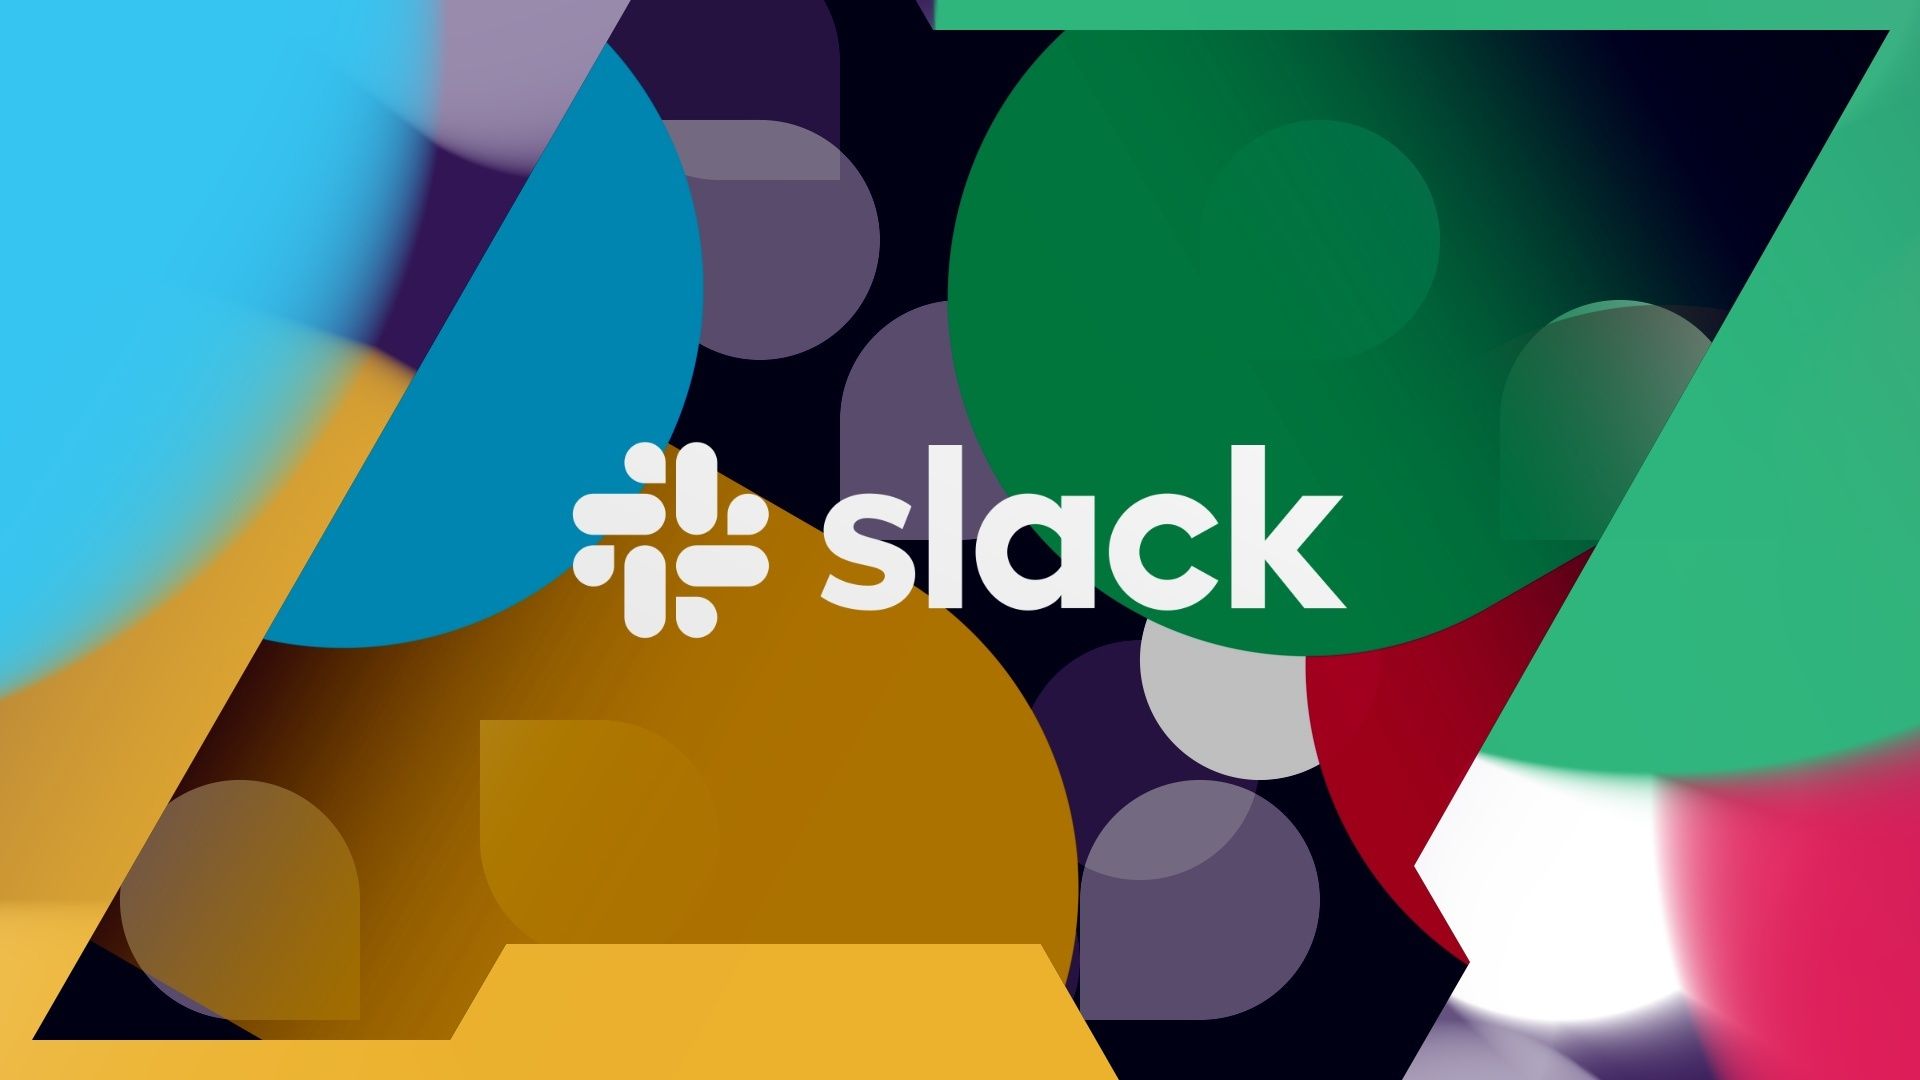 O logotipo do Slack contra um fundo multicolorido e o logotipo do Android Police